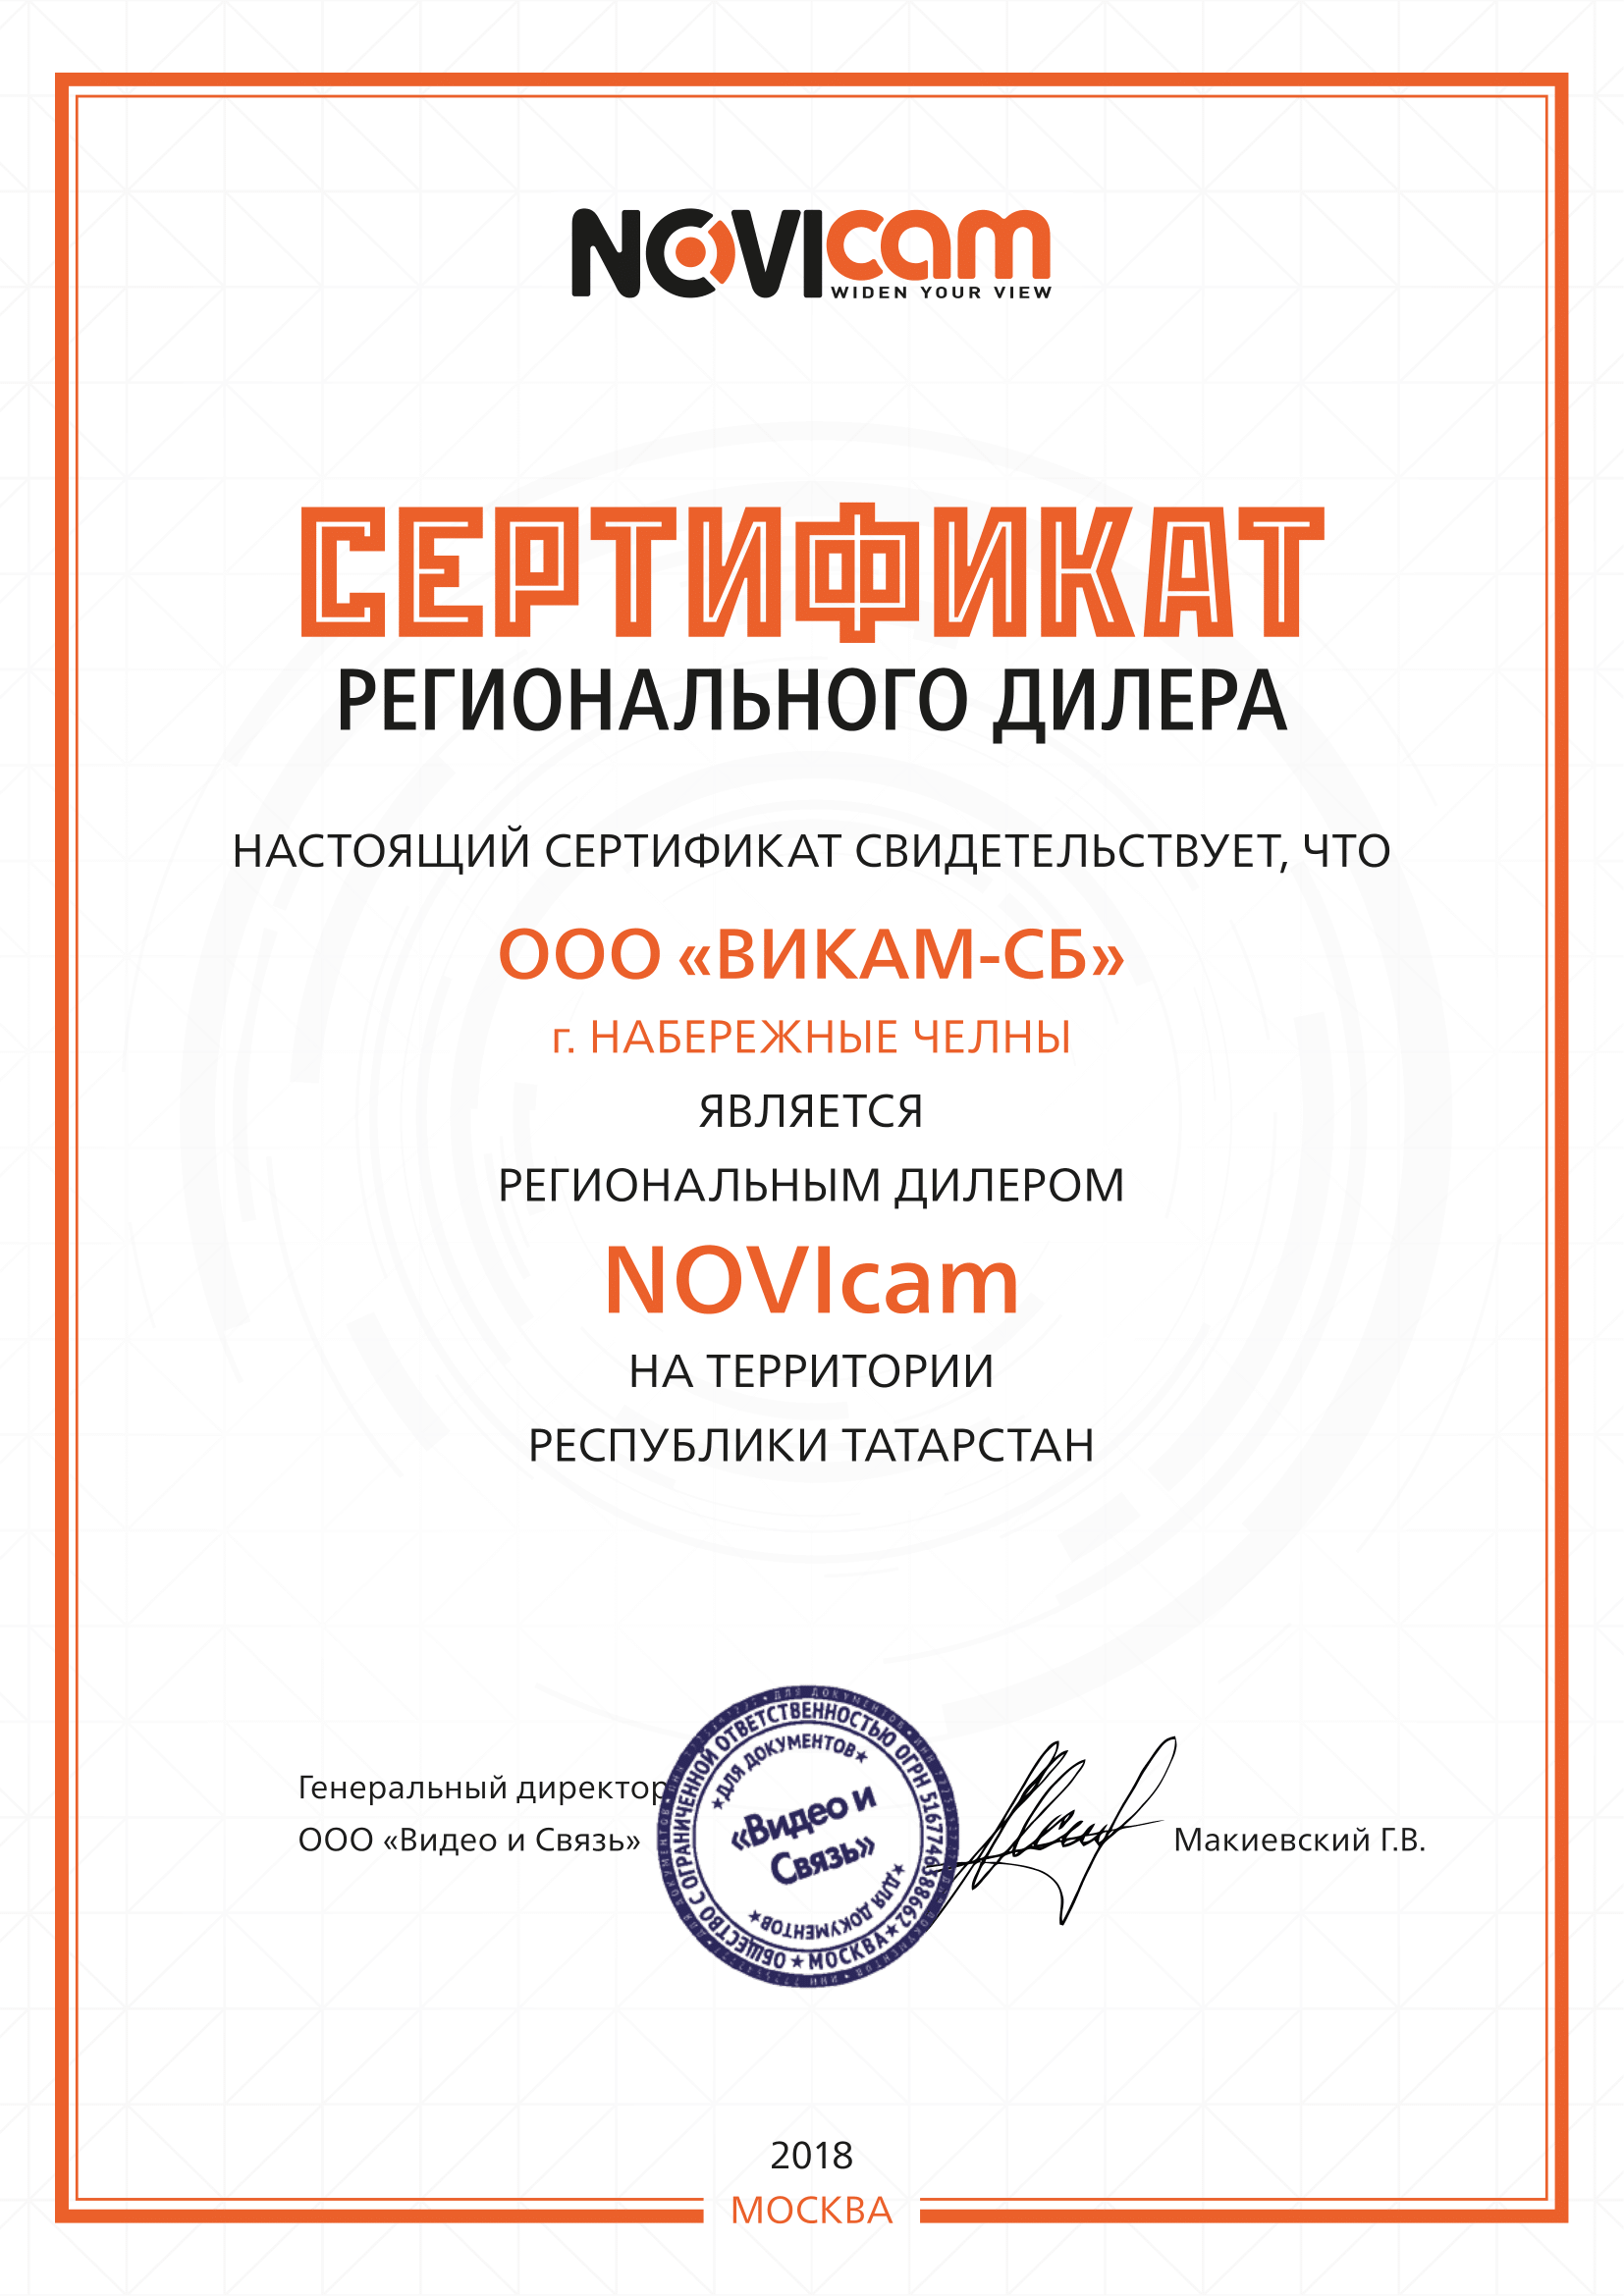 Сертификат регионального дилера Novicam